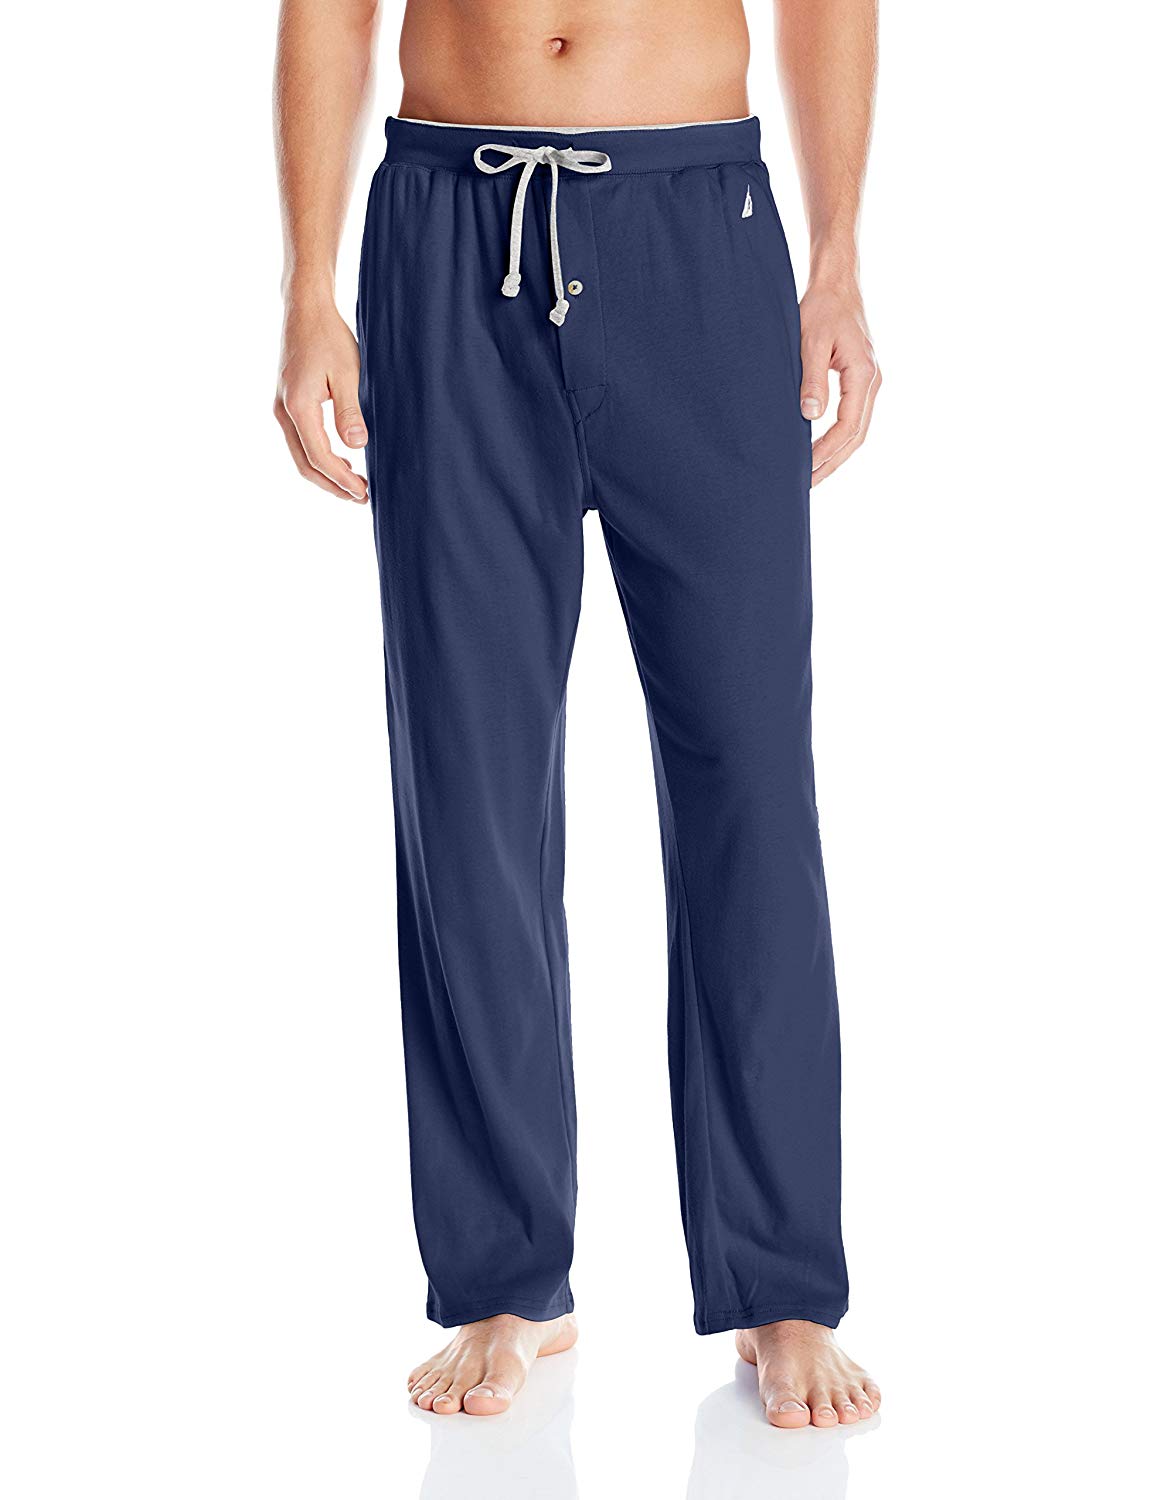 Nautica Men's Knit Sleep Pant, Navy, Large, Navy, Size Large v1XD | eBay